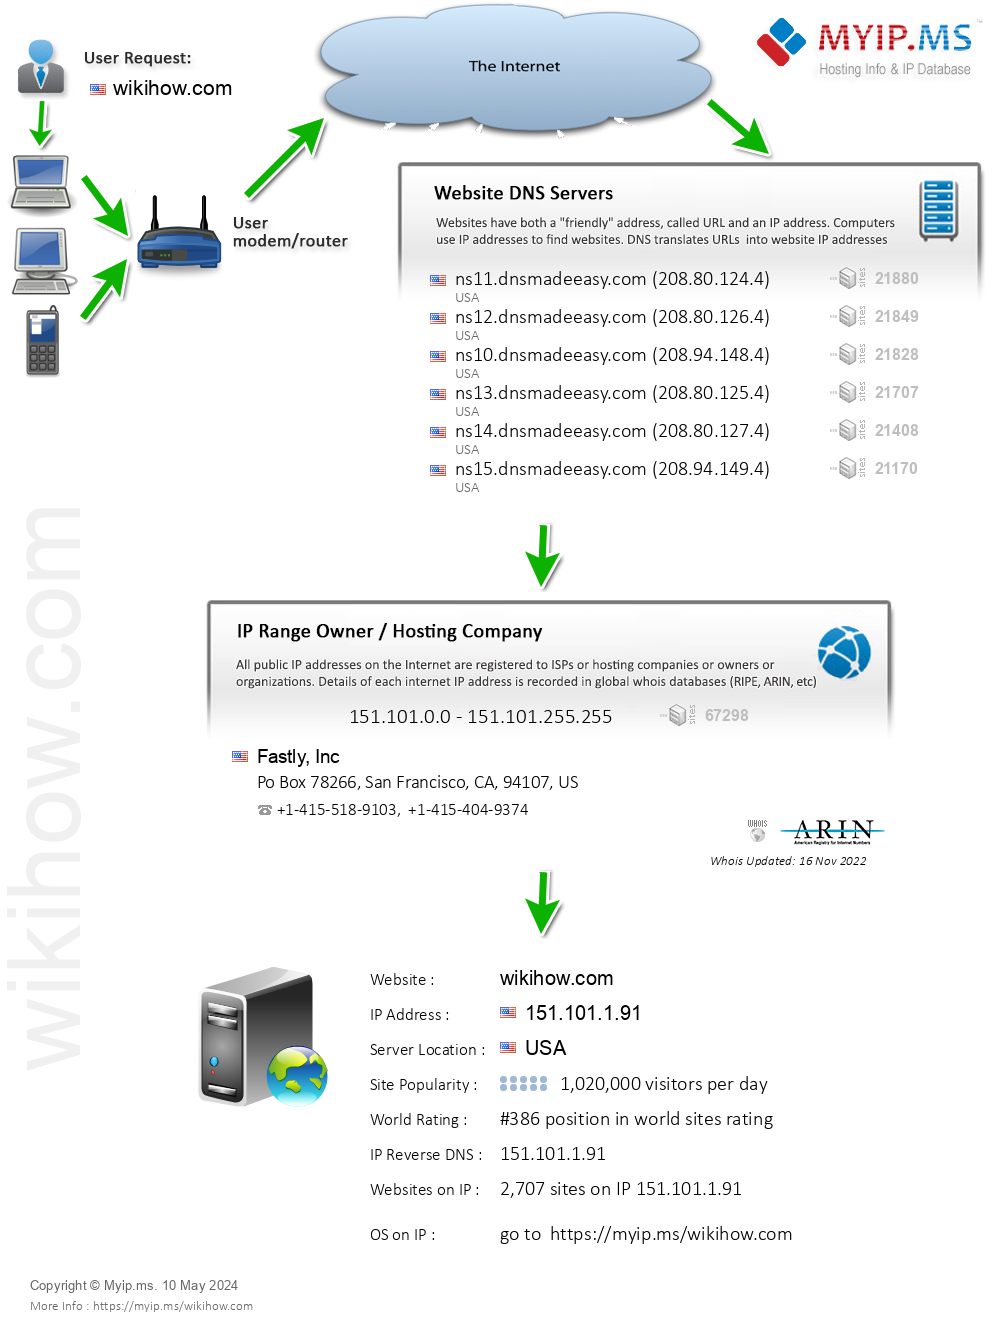 Wikihow.com - Website Hosting Visual IP Diagram